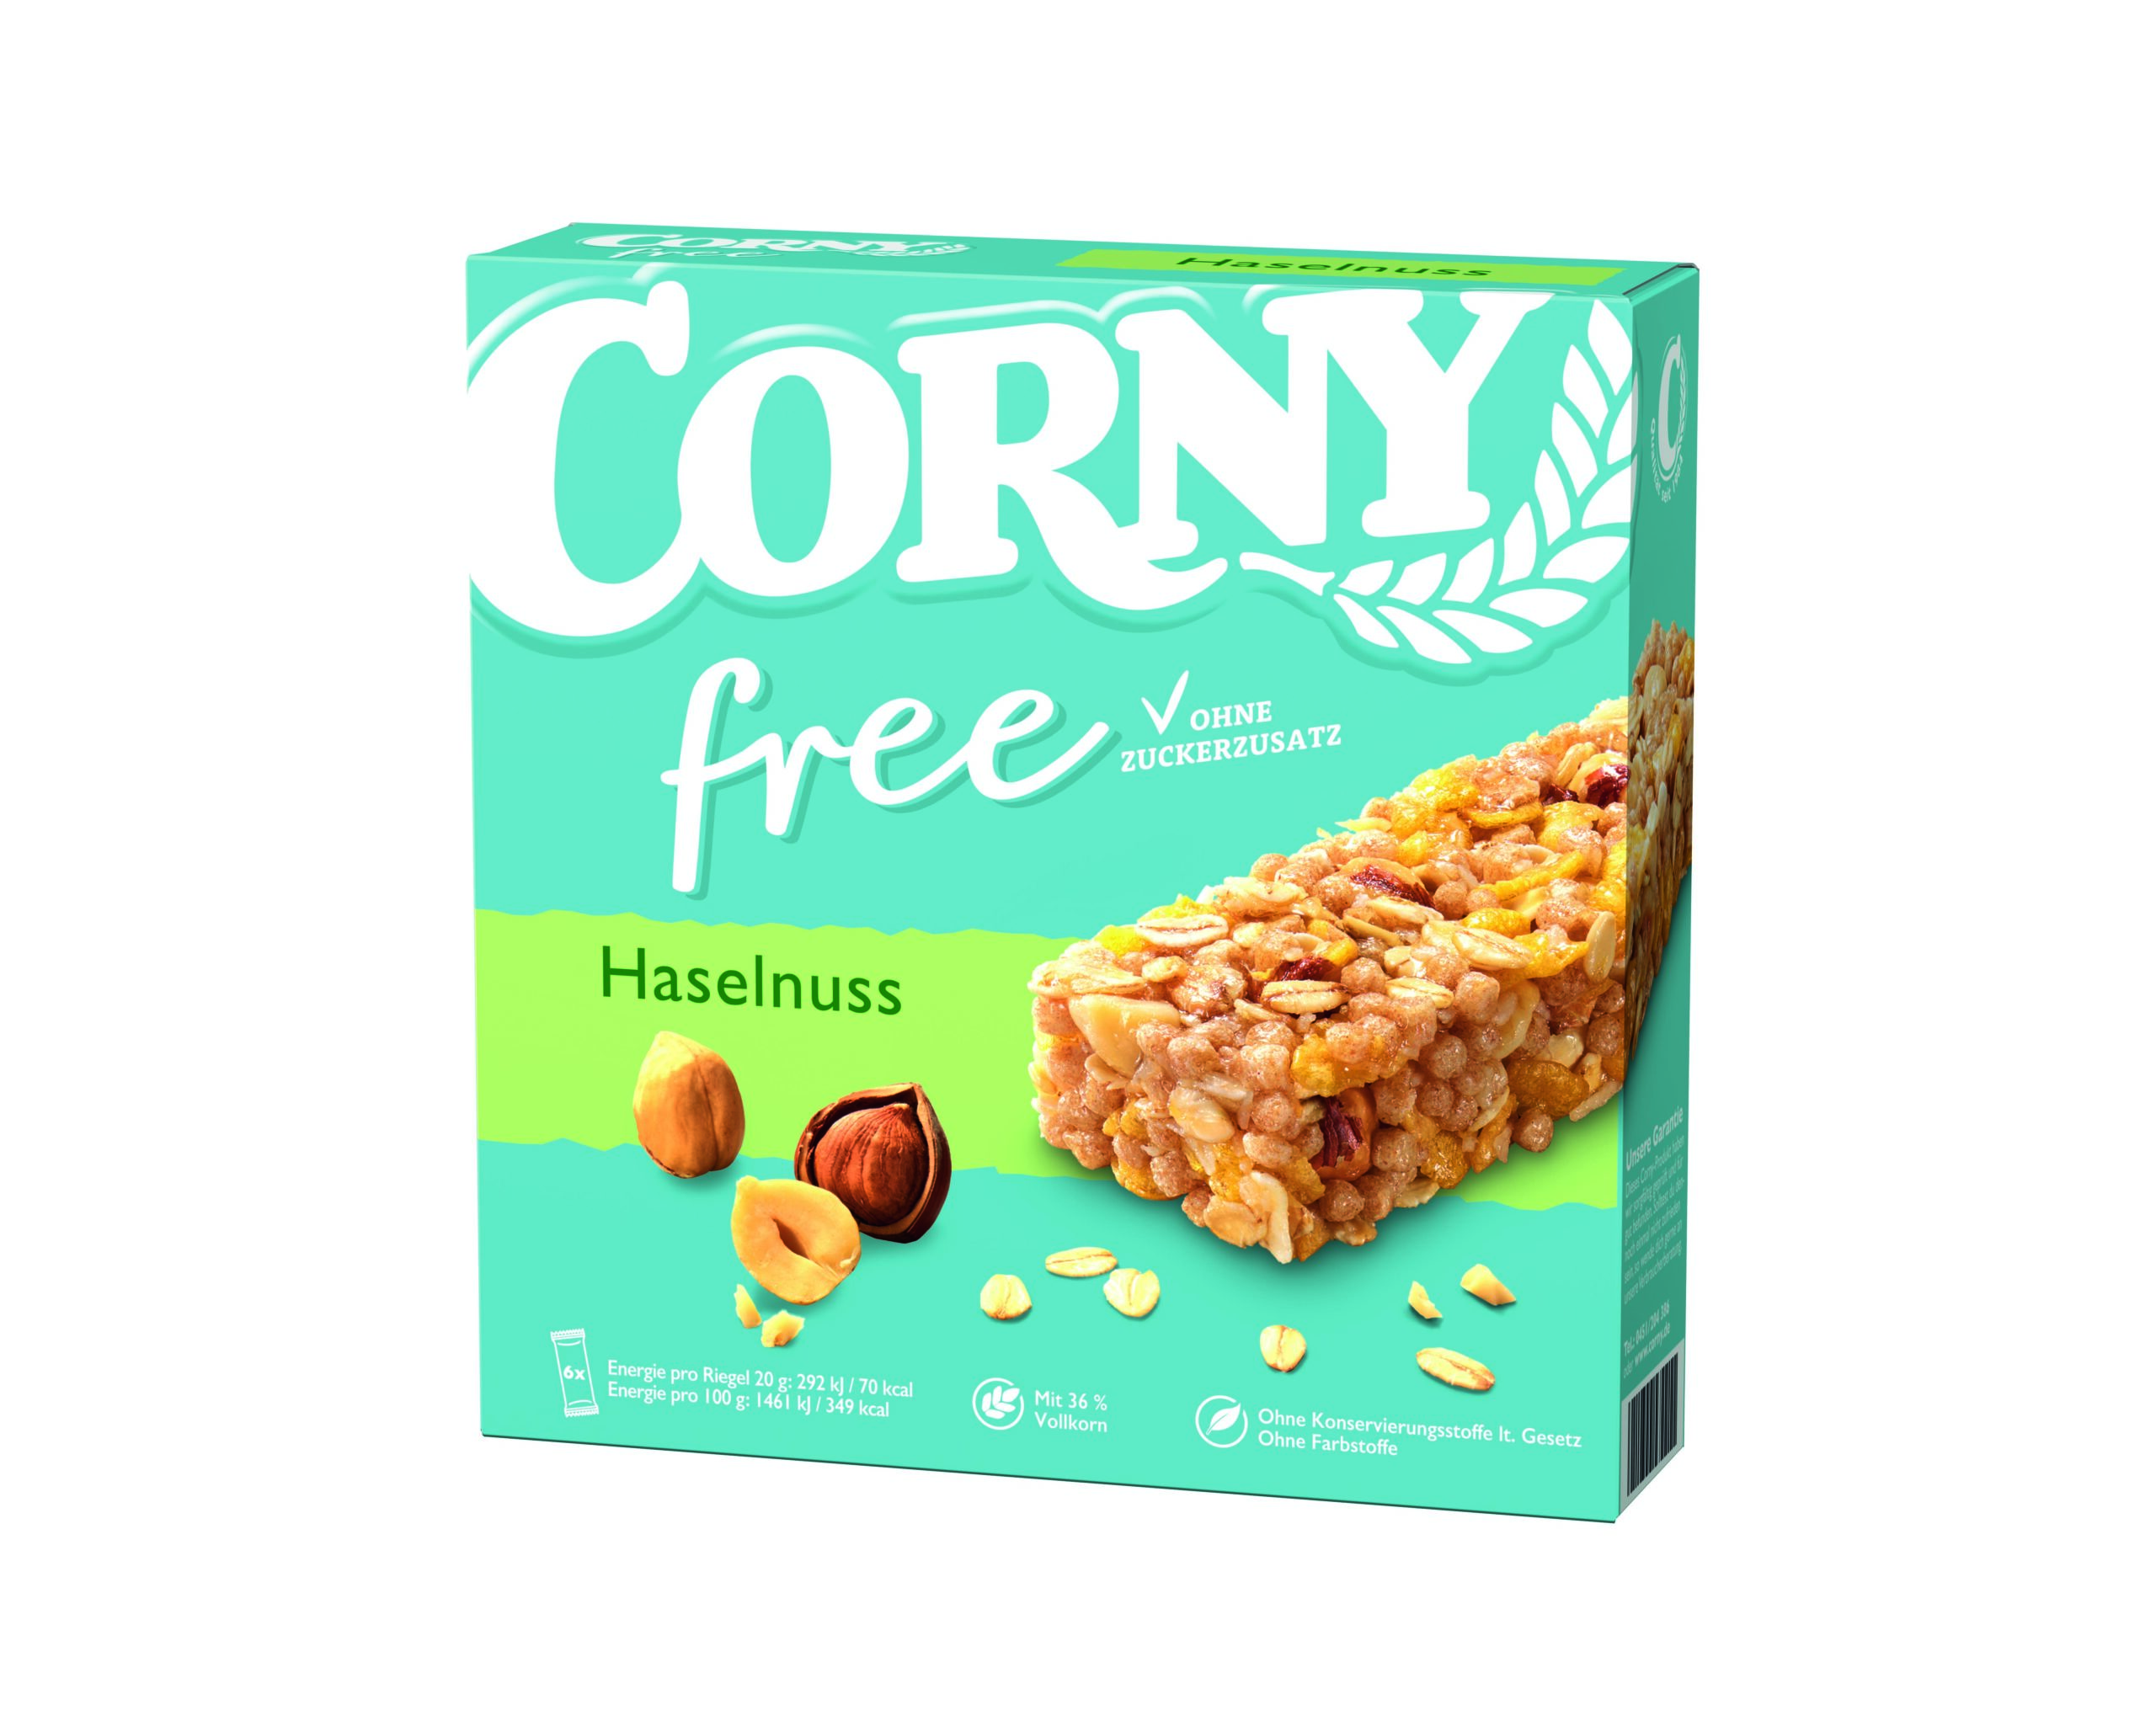 Corny Free Haselnuss 6x20g Packung